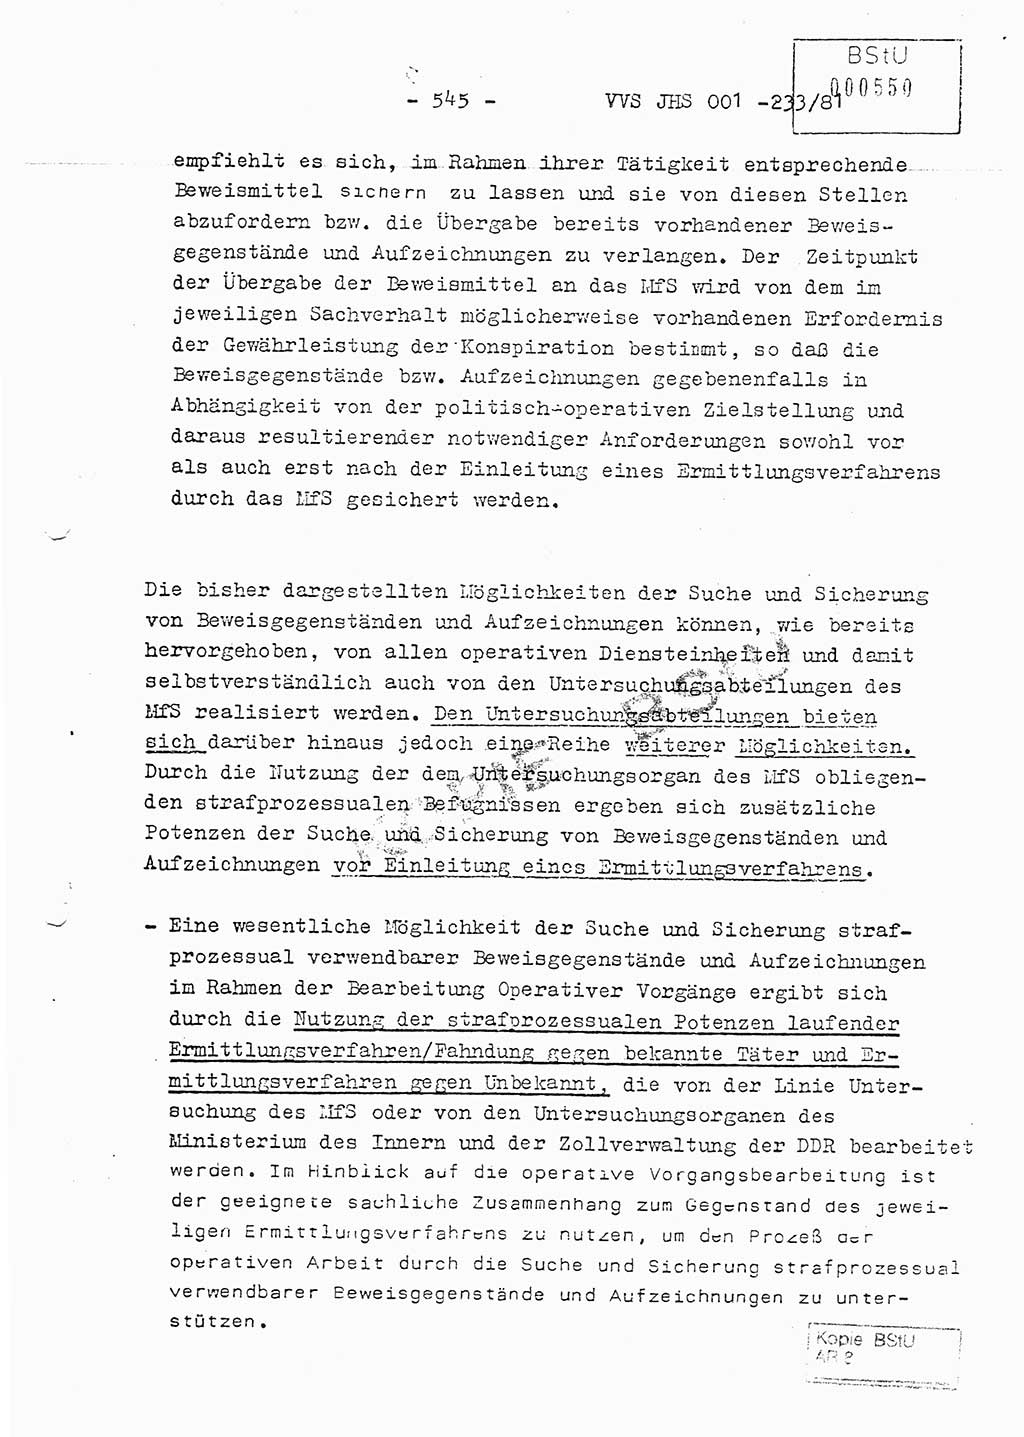 Dissertation Oberstleutnant Horst Zank (JHS), Oberstleutnant Dr. Karl-Heinz Knoblauch (JHS), Oberstleutnant Gustav-Adolf Kowalewski (HA Ⅸ), Oberstleutnant Wolfgang Plötner (HA Ⅸ), Ministerium für Staatssicherheit (MfS) [Deutsche Demokratische Republik (DDR)], Juristische Hochschule (JHS), Vertrauliche Verschlußsache (VVS) o001-233/81, Potsdam 1981, Blatt 545 (Diss. MfS DDR JHS VVS o001-233/81 1981, Bl. 545)